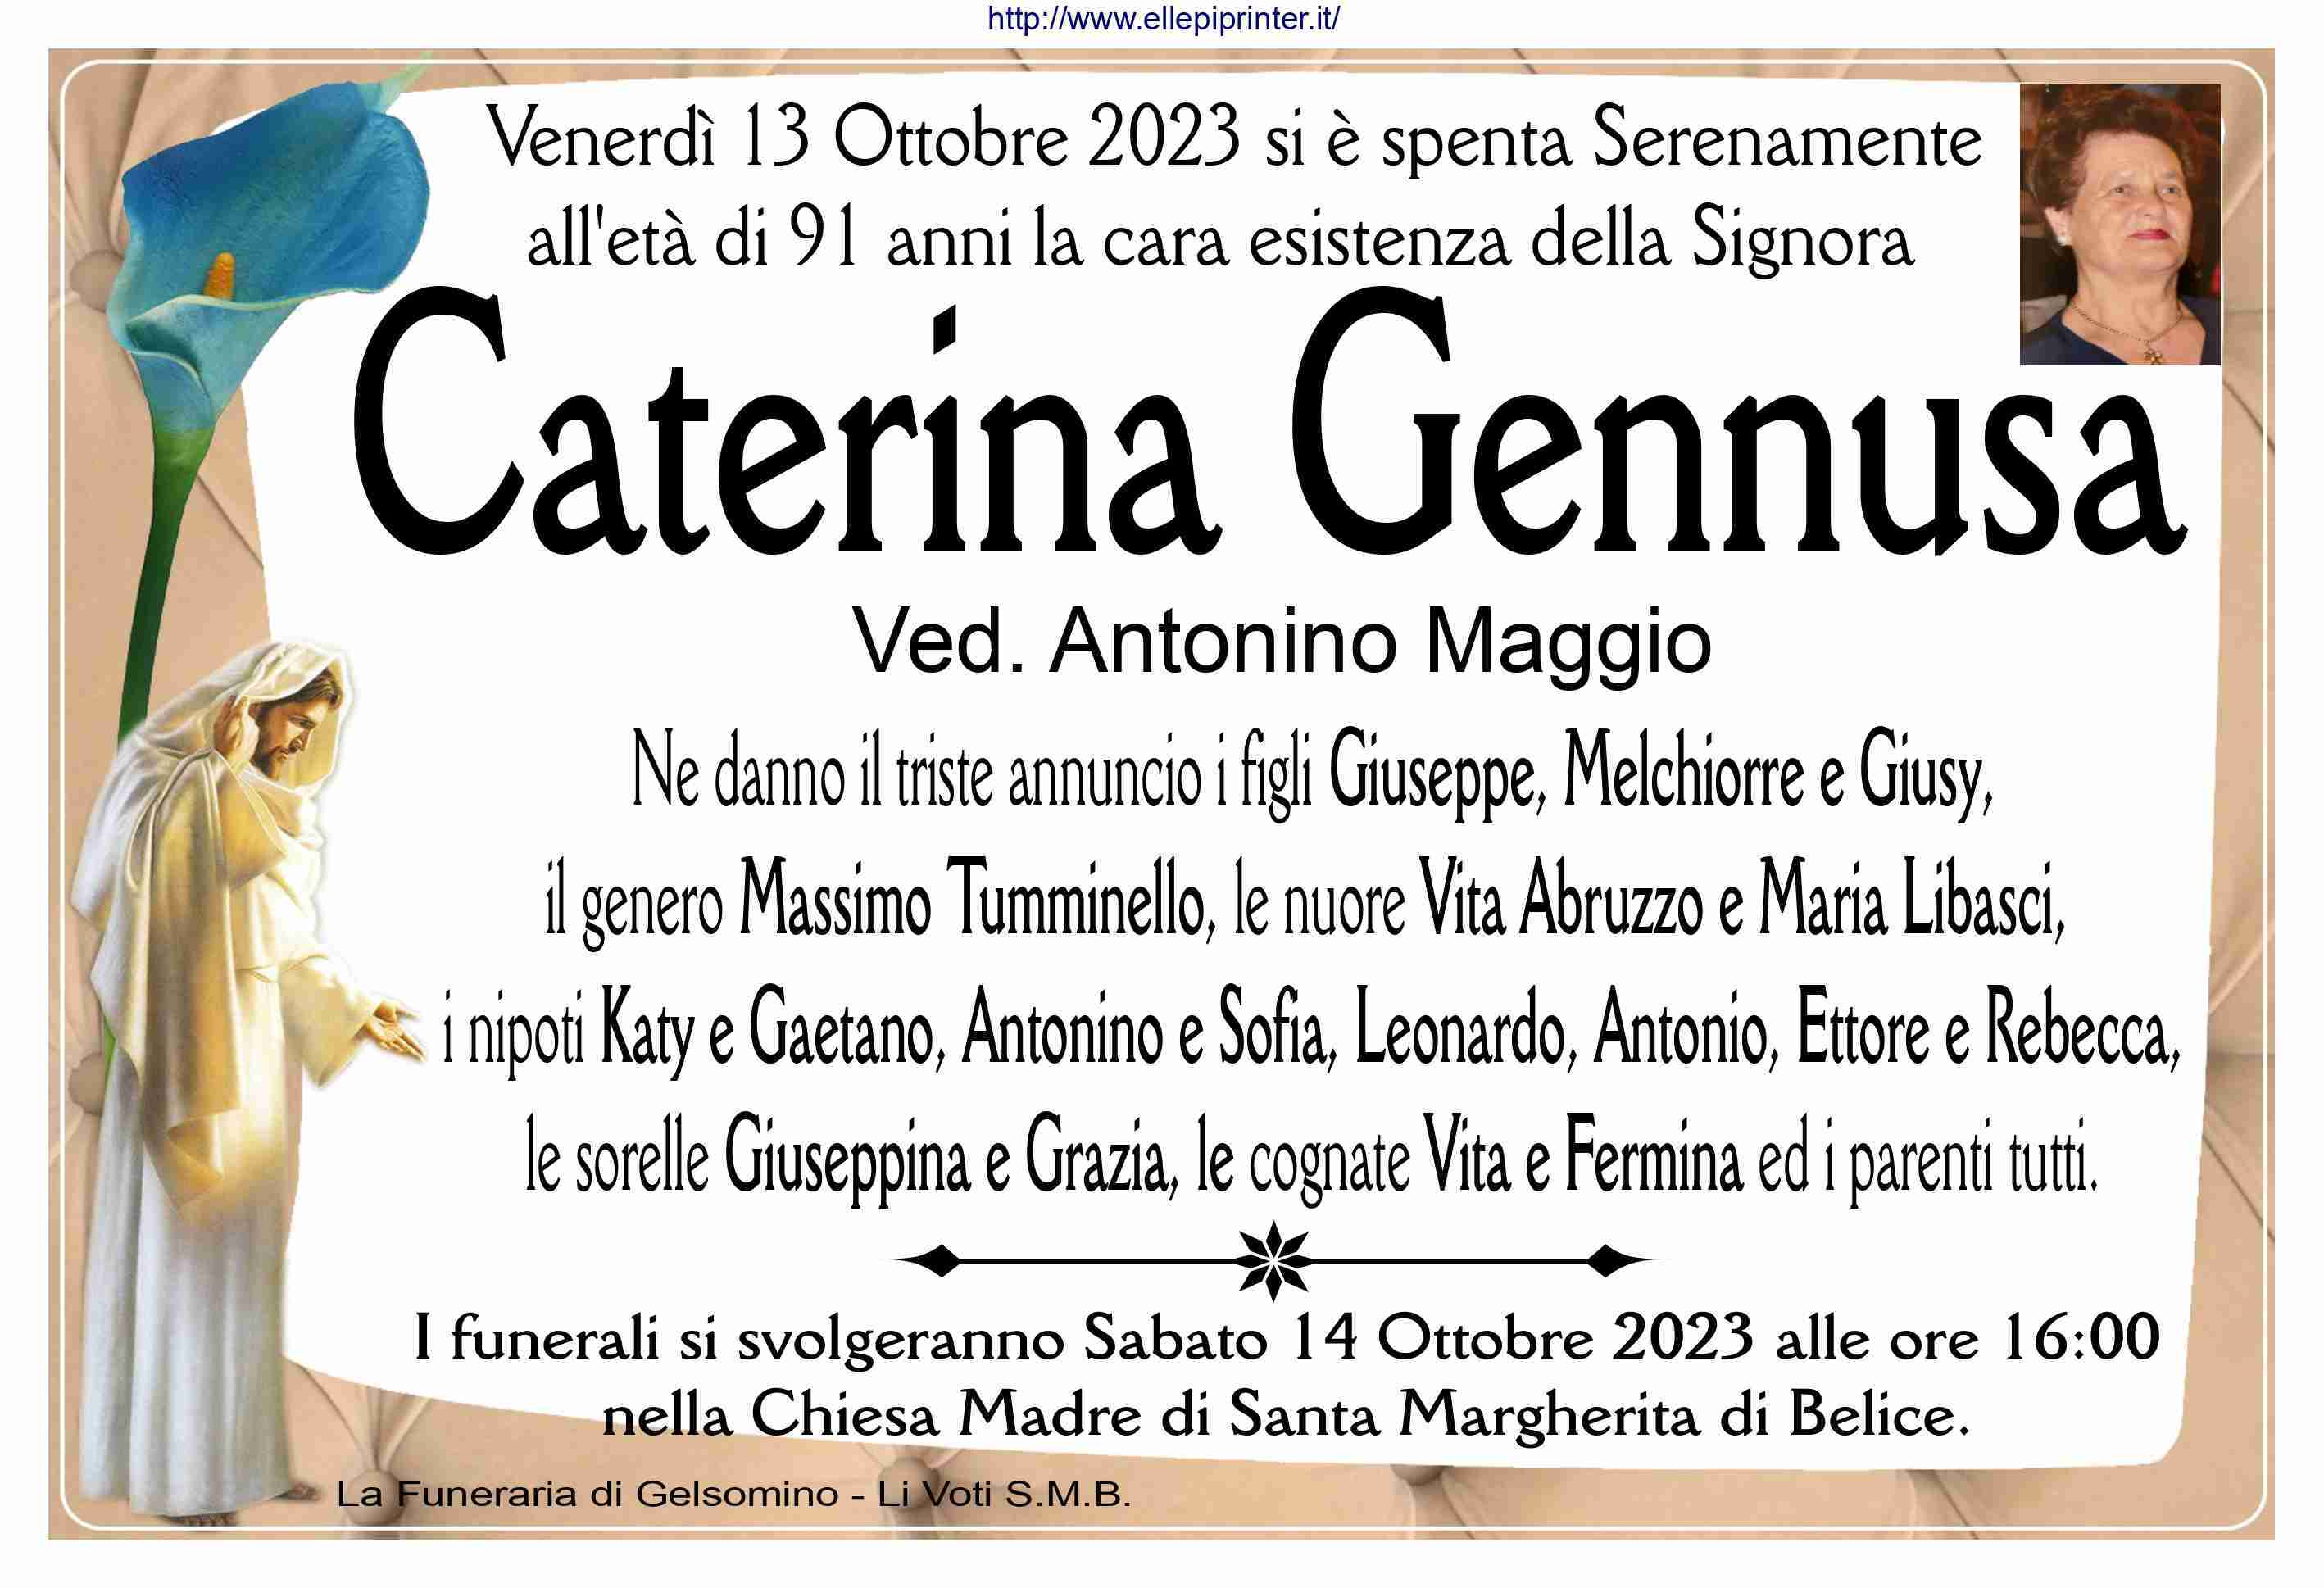 Caterina Gennusa